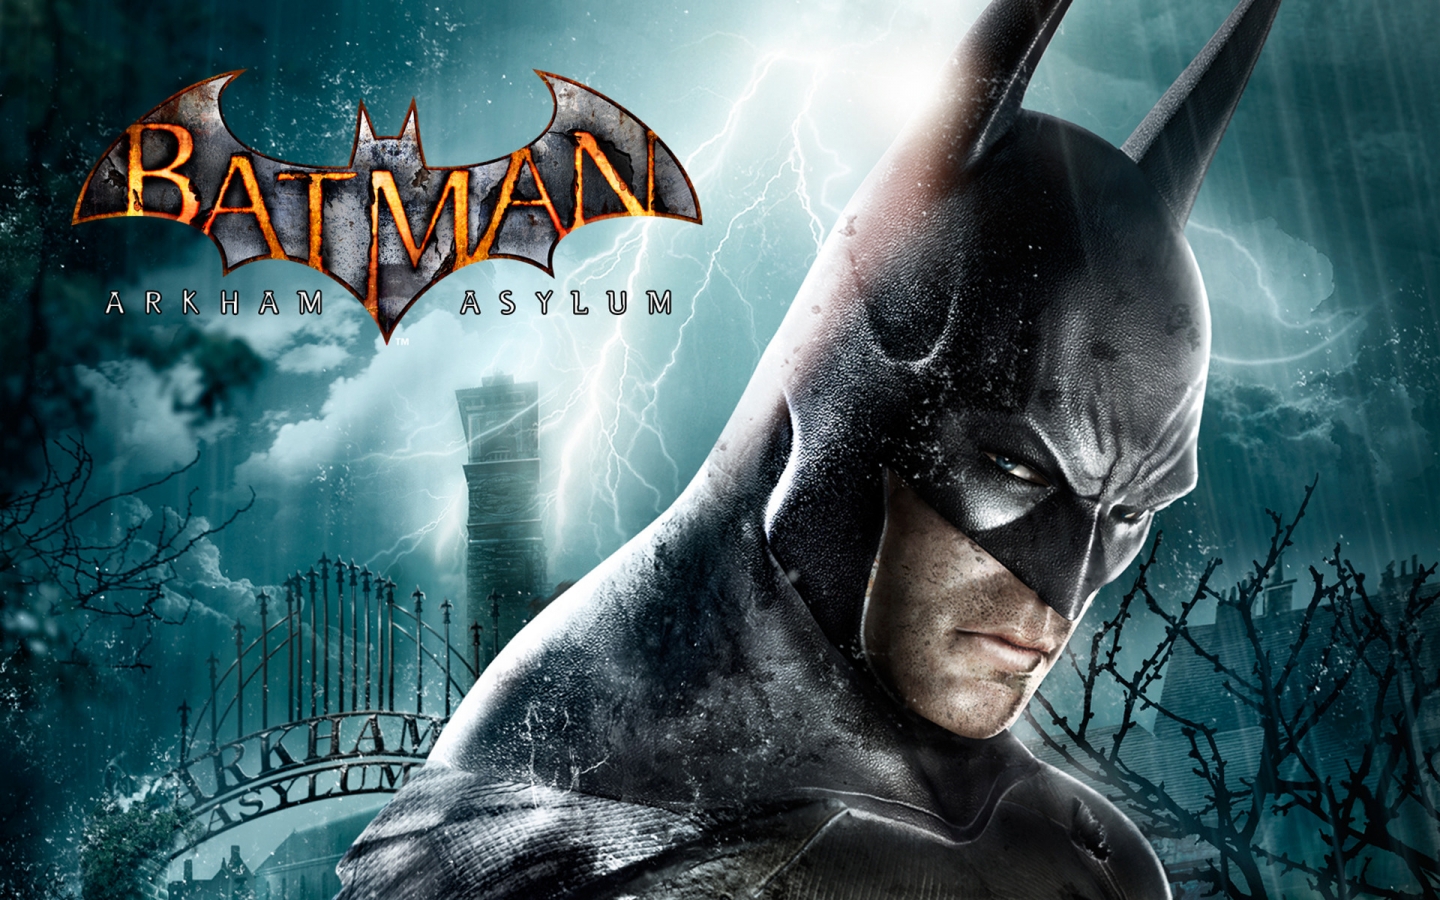 Batman Arkham Asylum for 1440 x 900 widescreen resolution